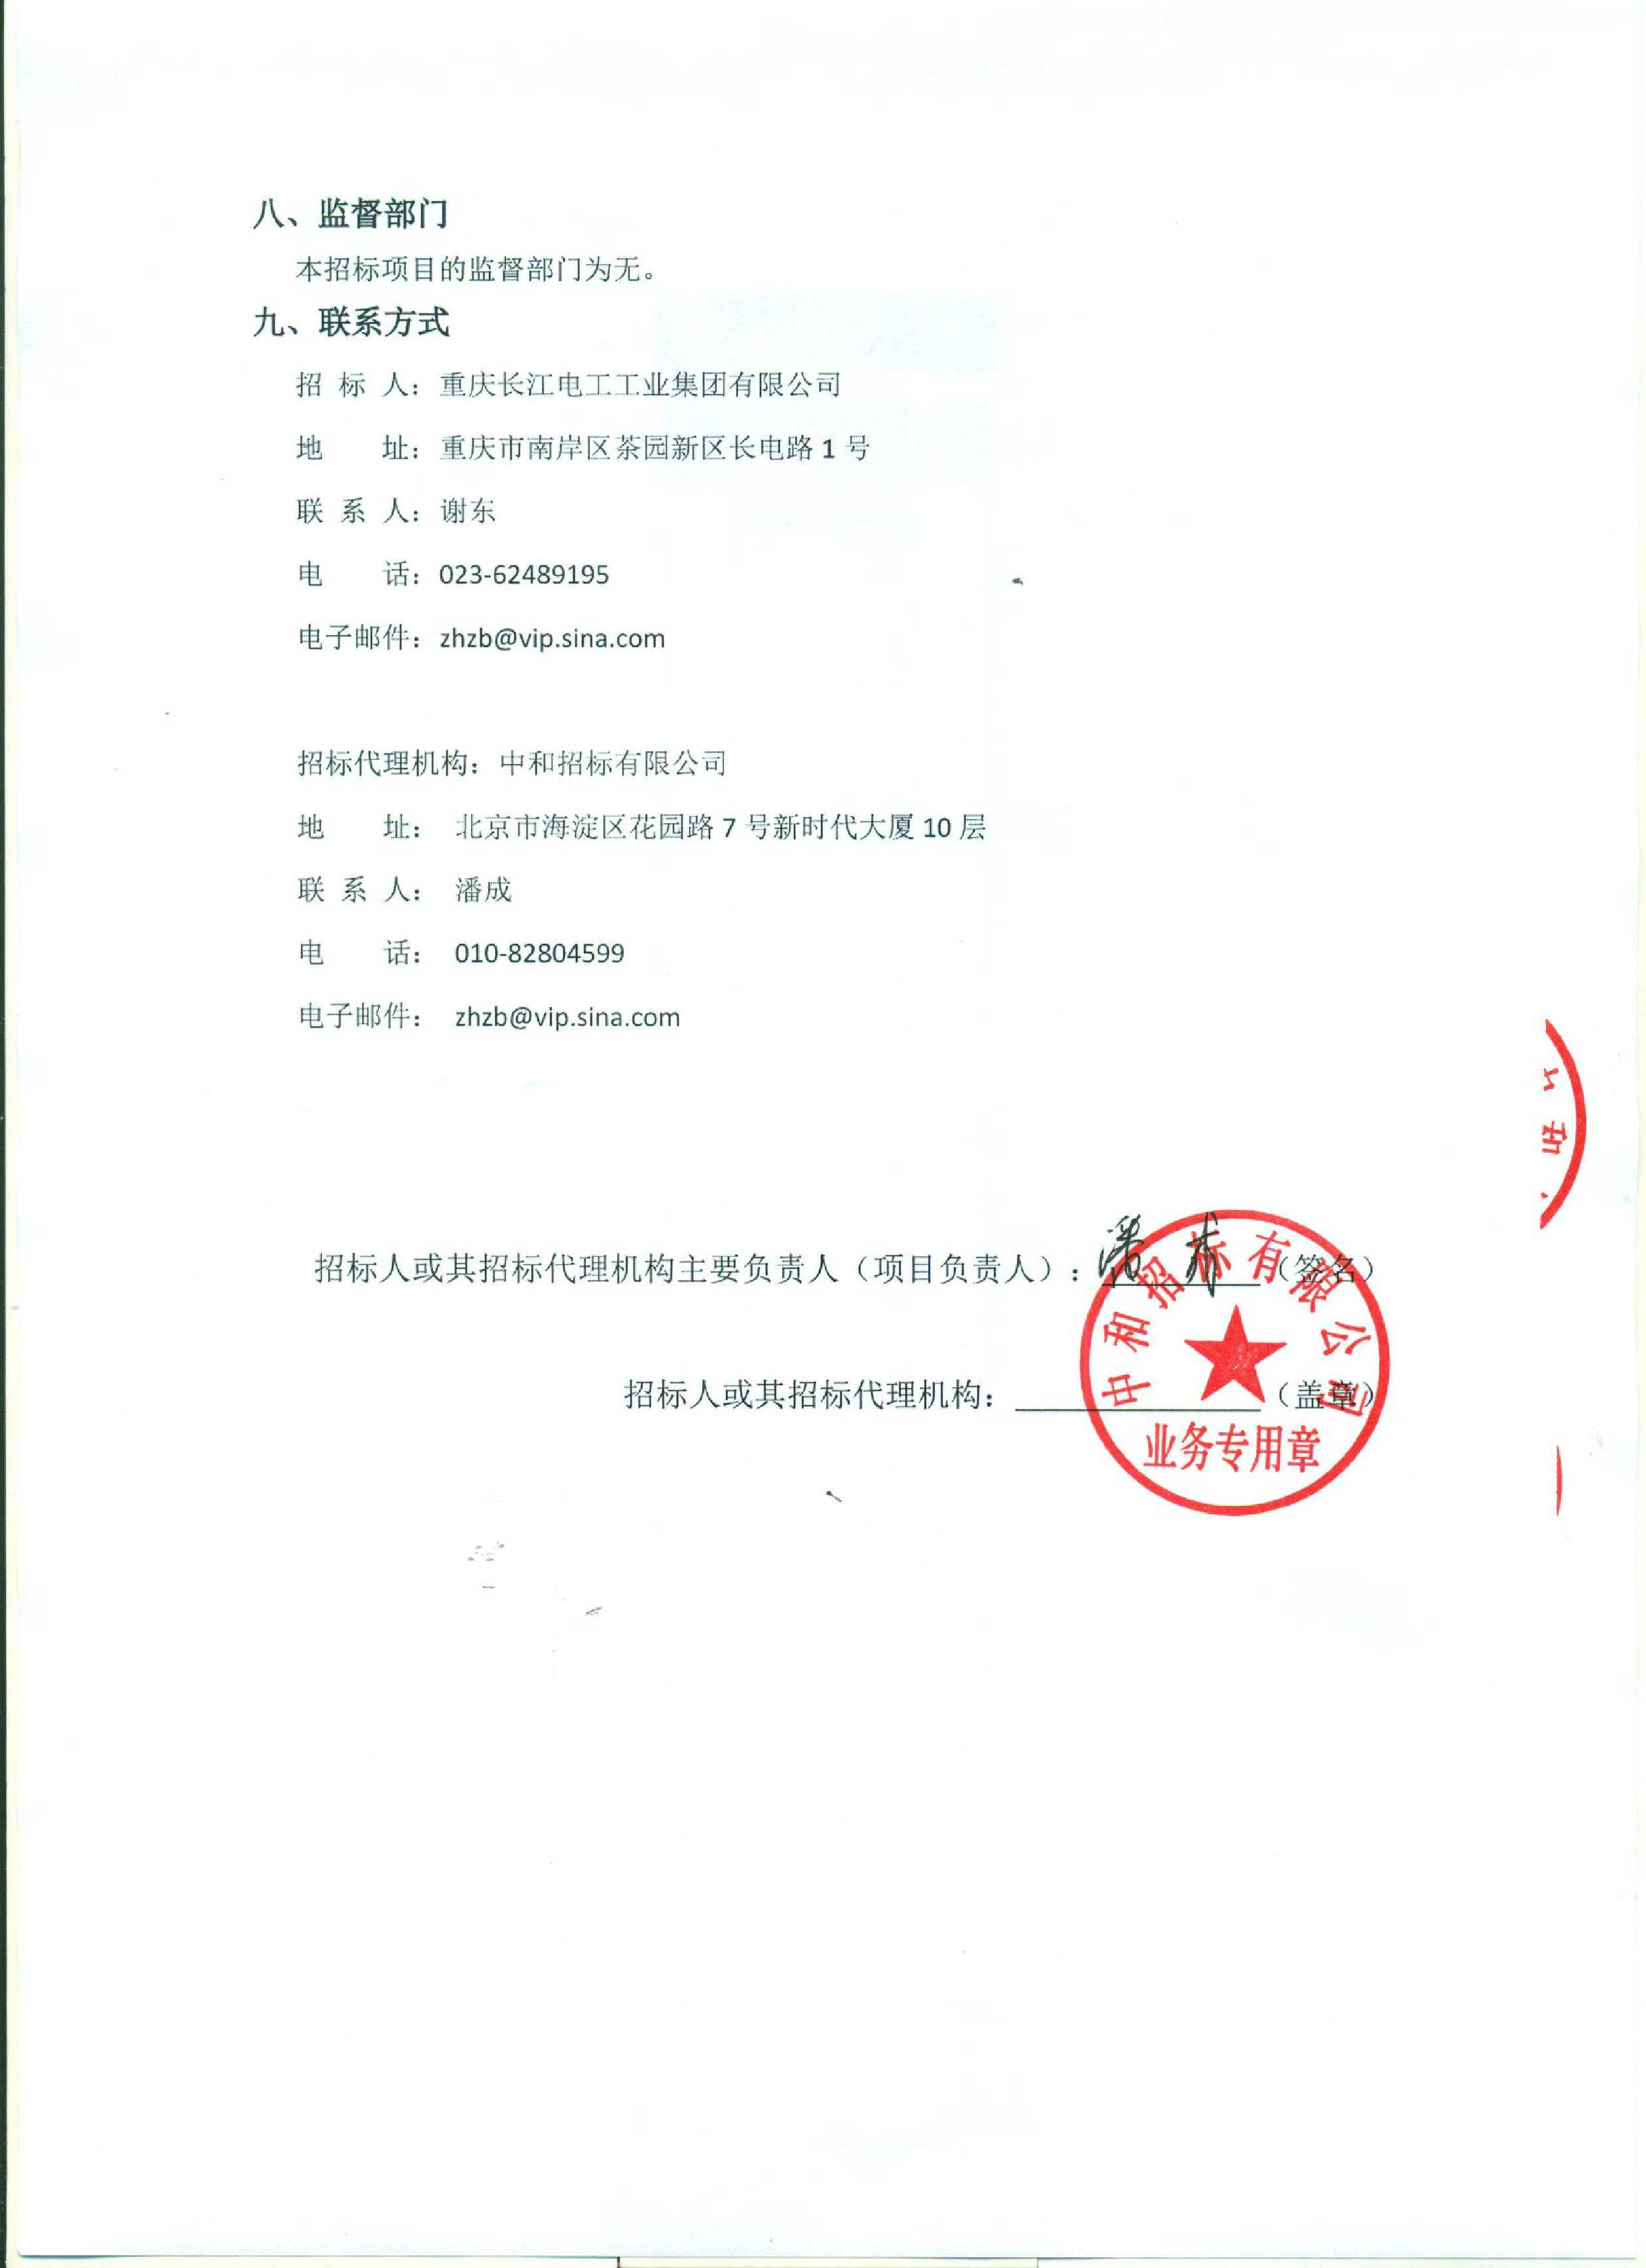 重庆长江电工工业集团有限公司枪弹底火装压药自动生产线设备采购重新